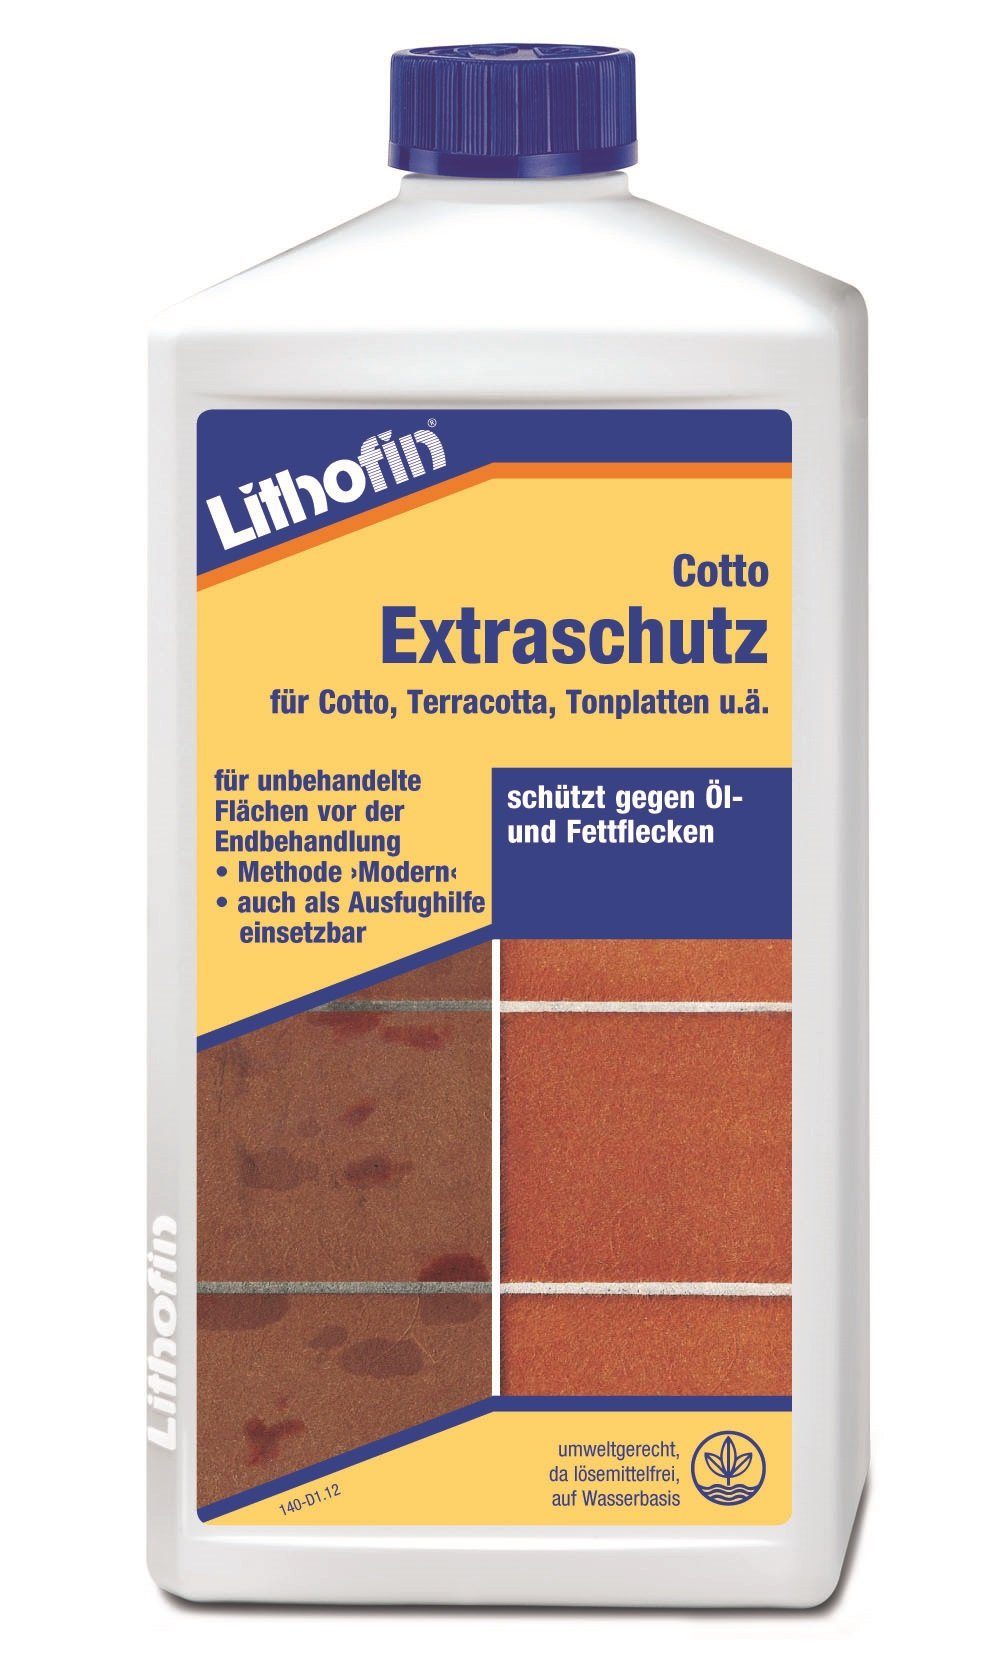 Lithofin LITHOFIN Cotto Extraschutz, 1Ltr Naturstein-Reiniger